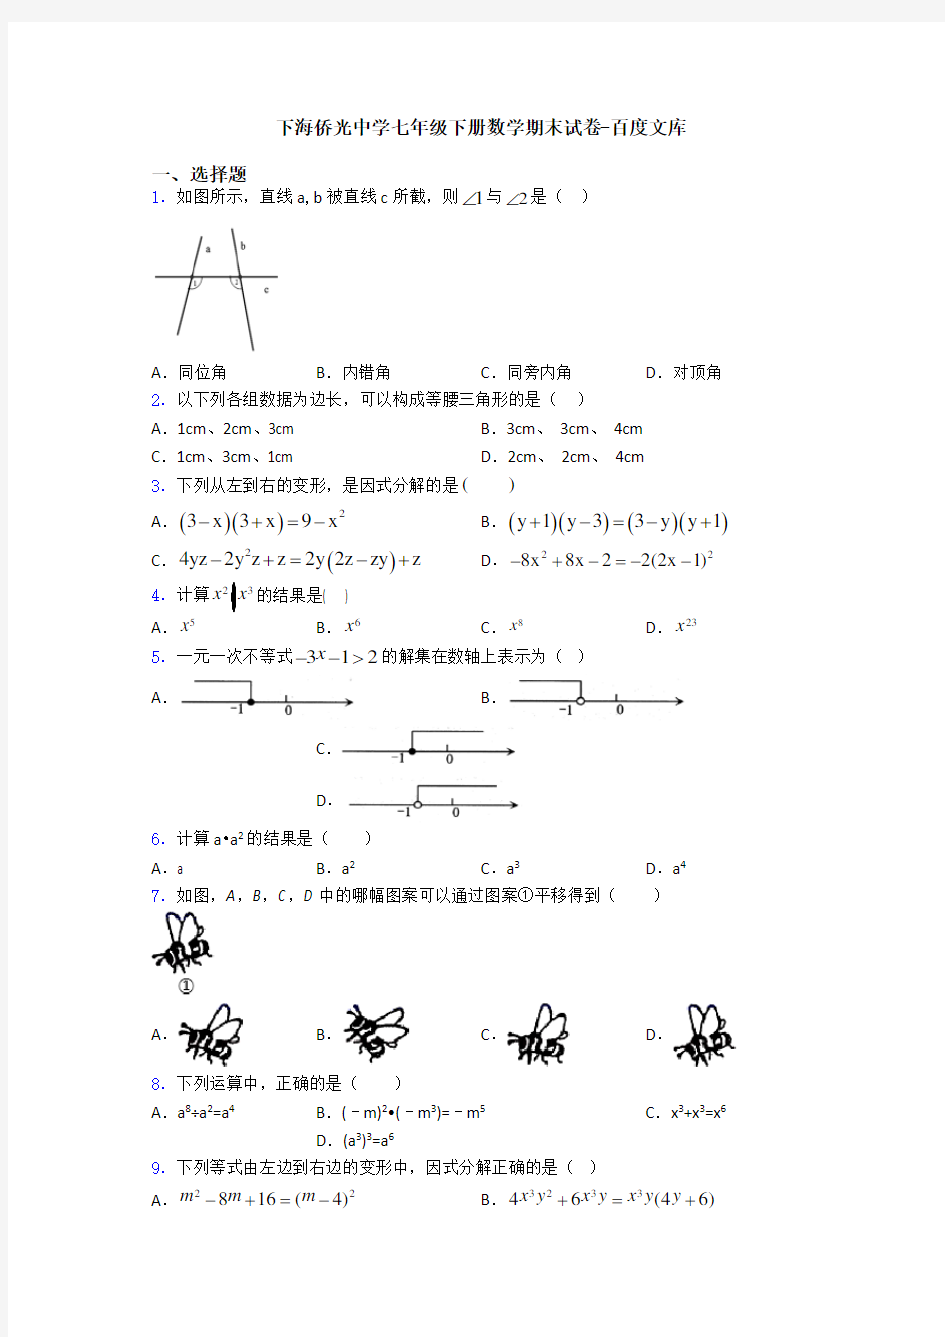 上海侨光中学七年级下册数学期末试卷-百度文库